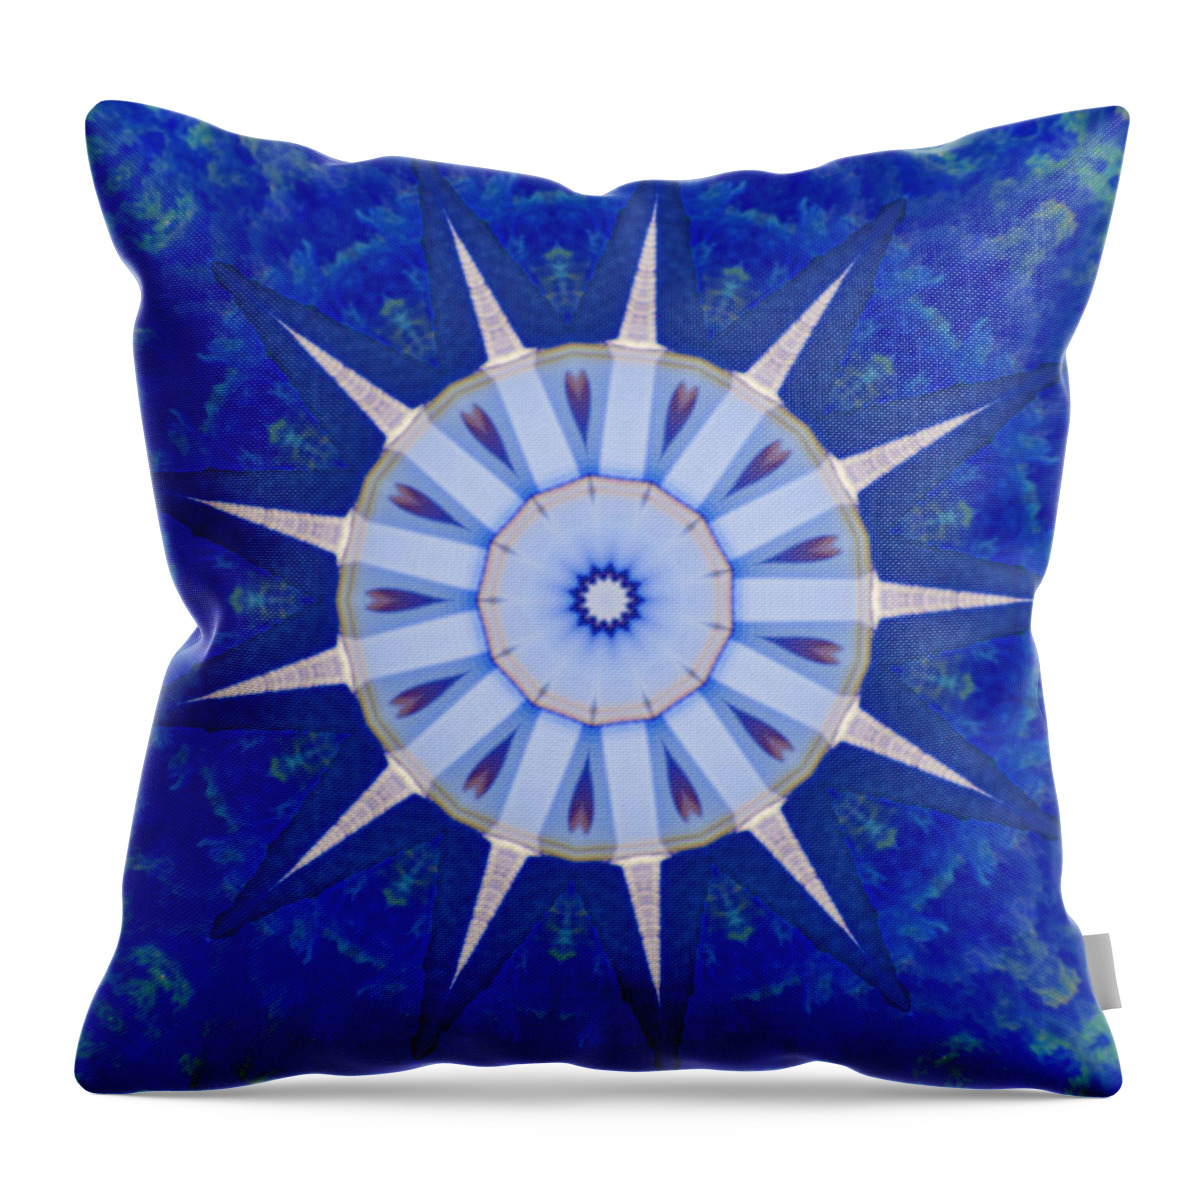 Kaleidoscope Throw Pillow featuring the photograph Kaleidoscope Blue by Bill Barber